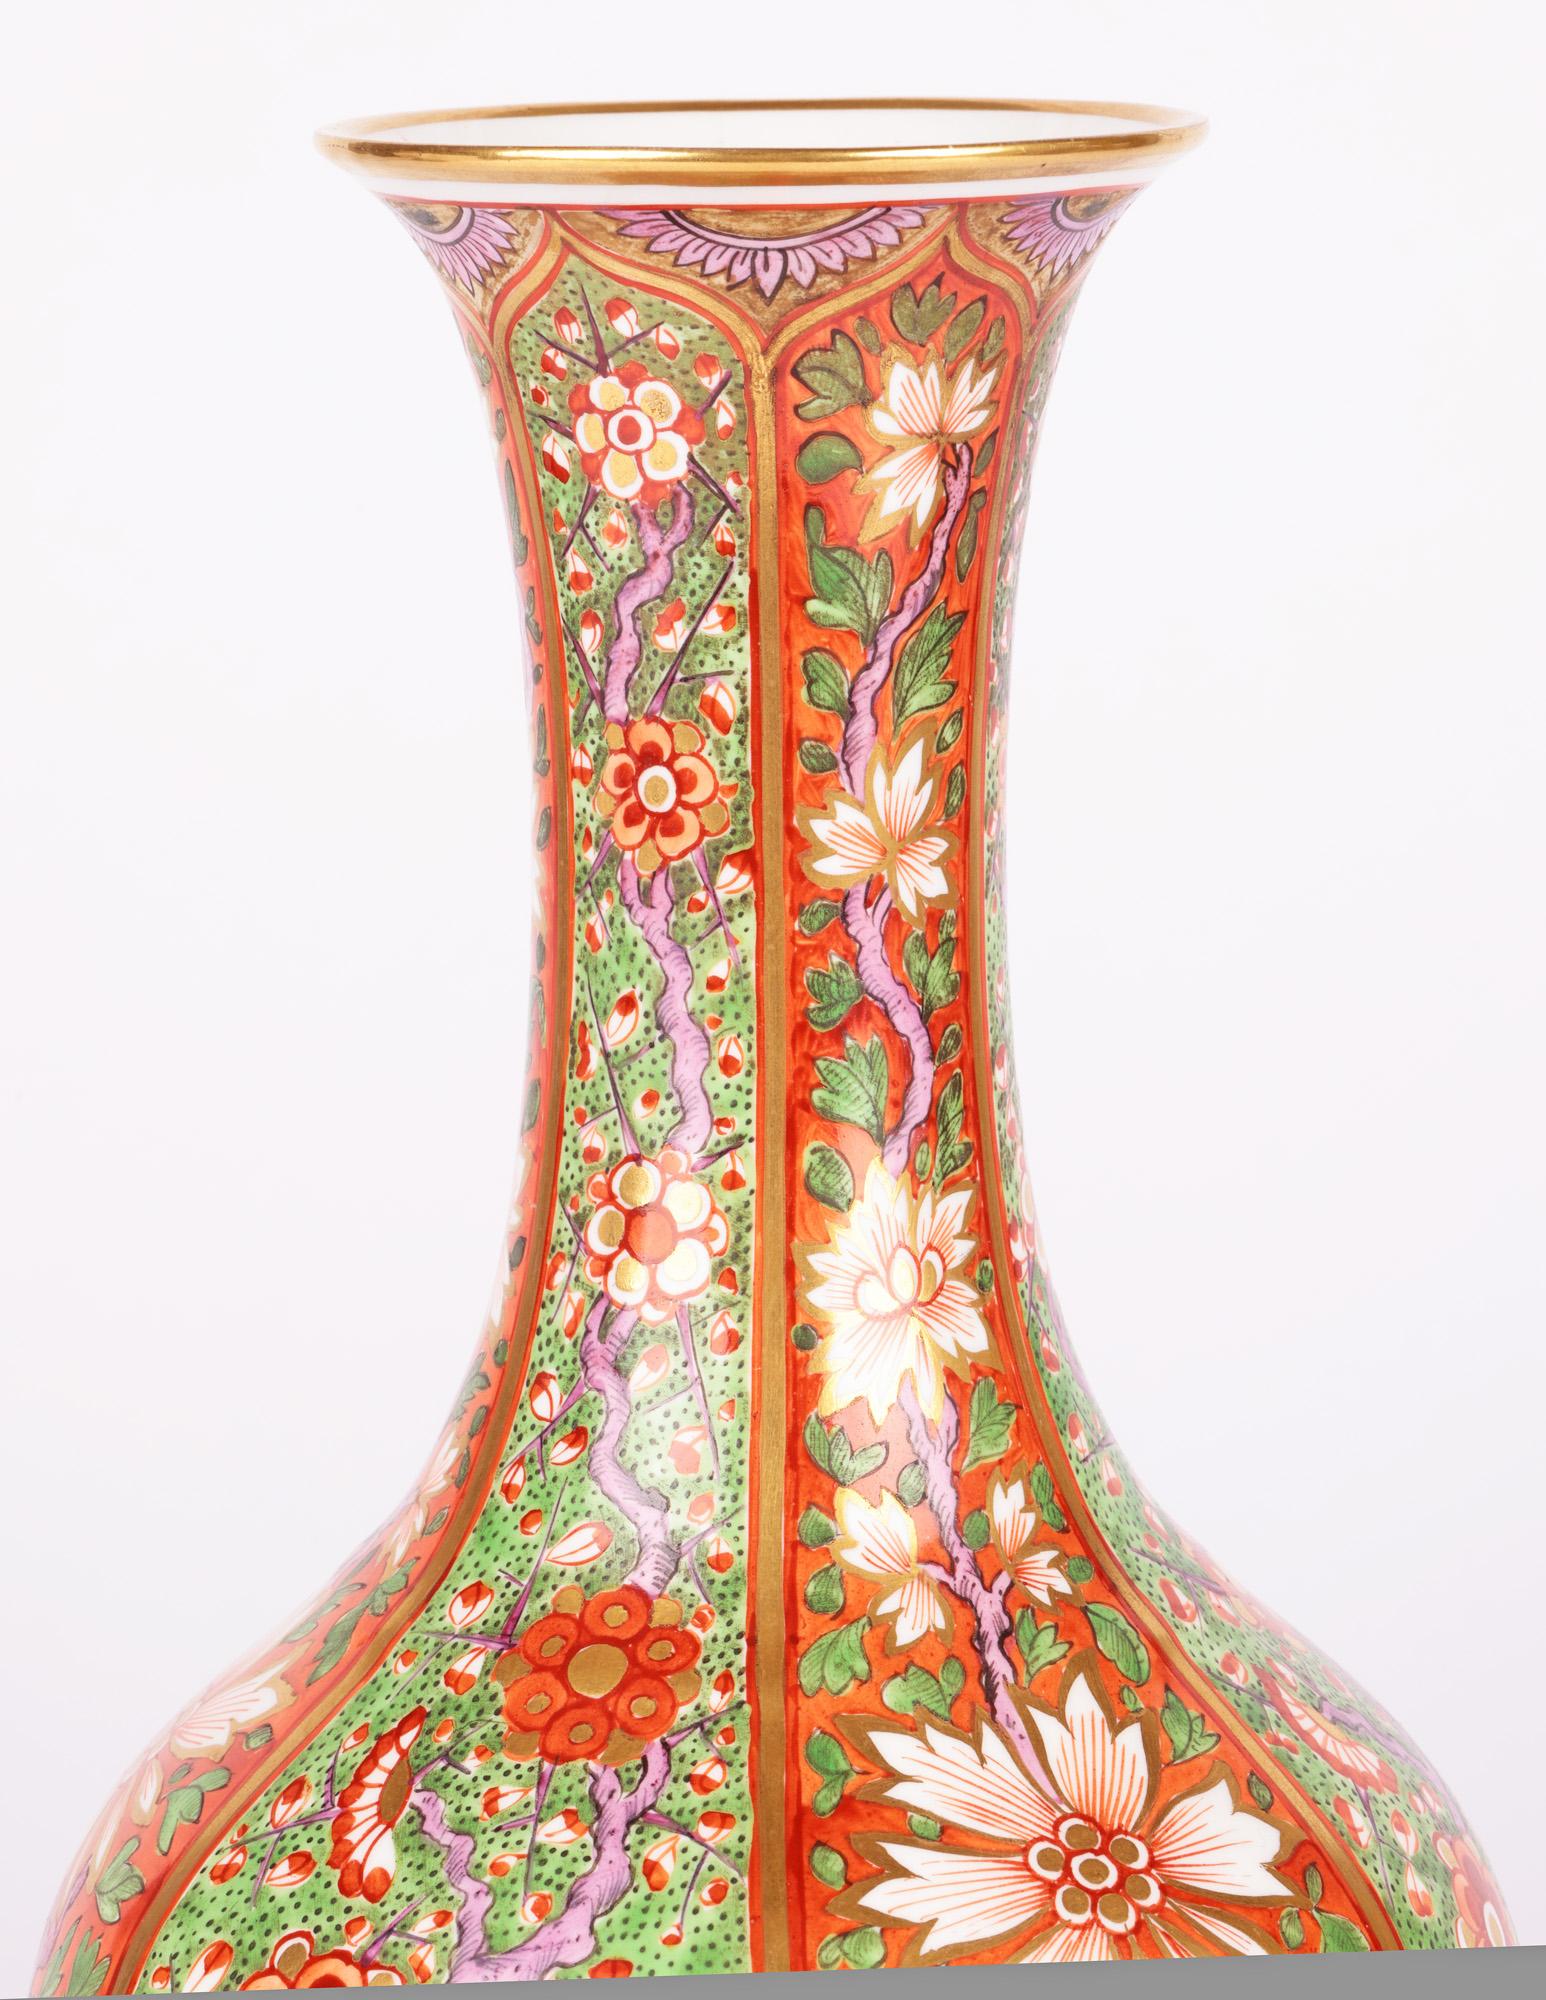 Eine atemberaubende und außergewöhnliche spätgeorgianische floral bemalte Porzellanflaschenvase aus Derby aus der Zeit um 1820. Die große Vase steht auf einem schmalen runden Fuß mit leicht vertieftem Boden und hat einen runden bauchigen Körper mit